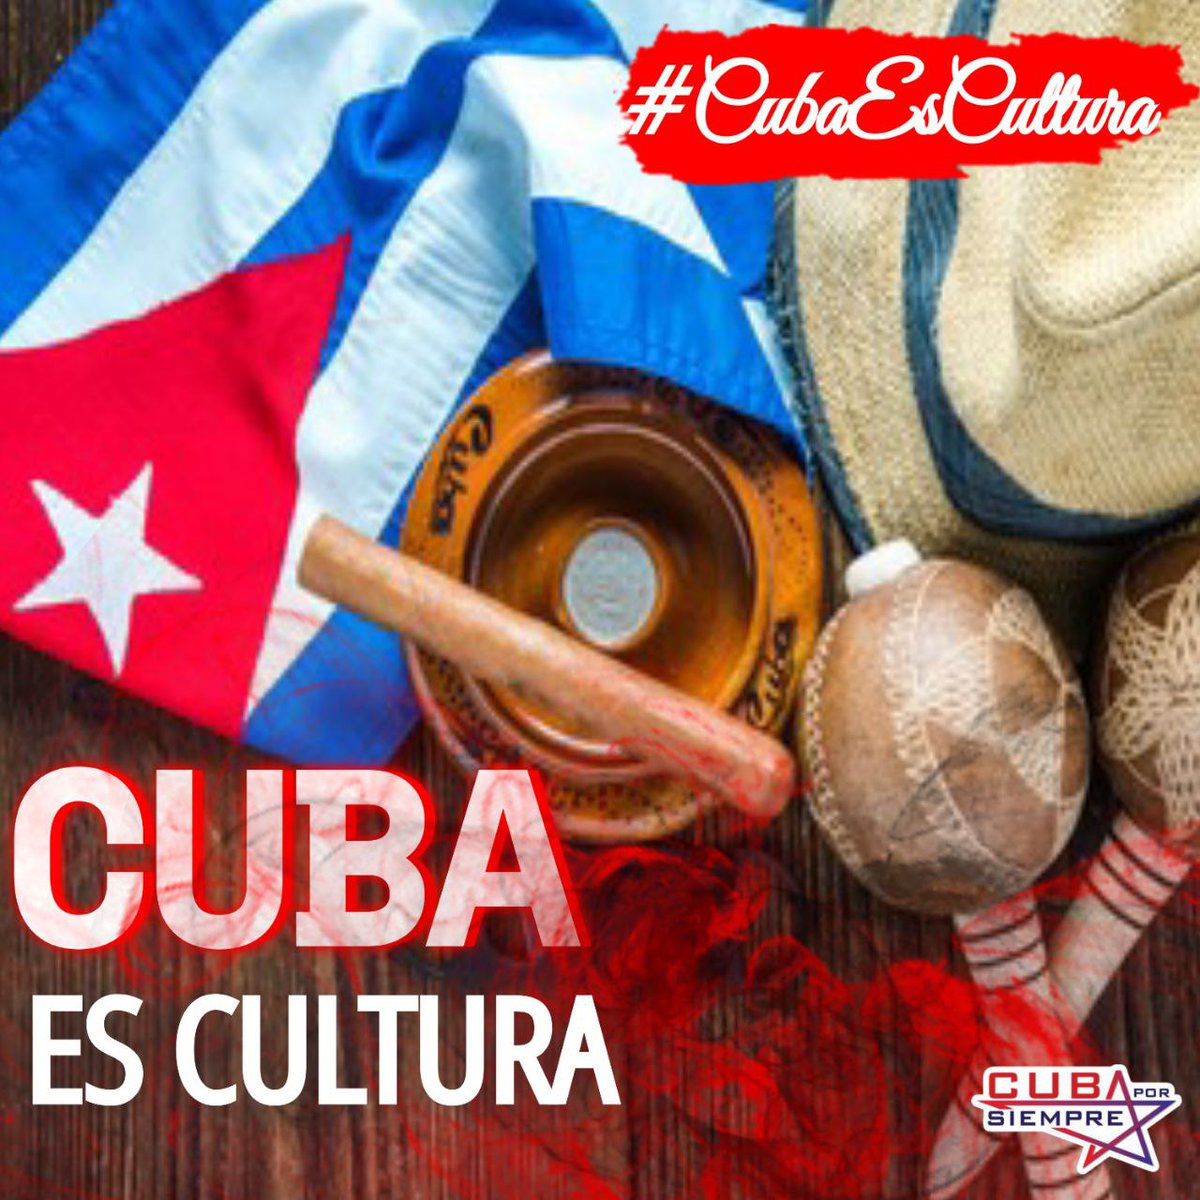 @cafemartiano @DiazCanelB @DrRobertoMOjeda @InesMChapman @PartidoPCC @TeresaBoue @GHNordelo5 @FMC_Cuba @cdr_cuba @EVilluendasC @agnes_becerra #DíaDeLaCulturaCubana